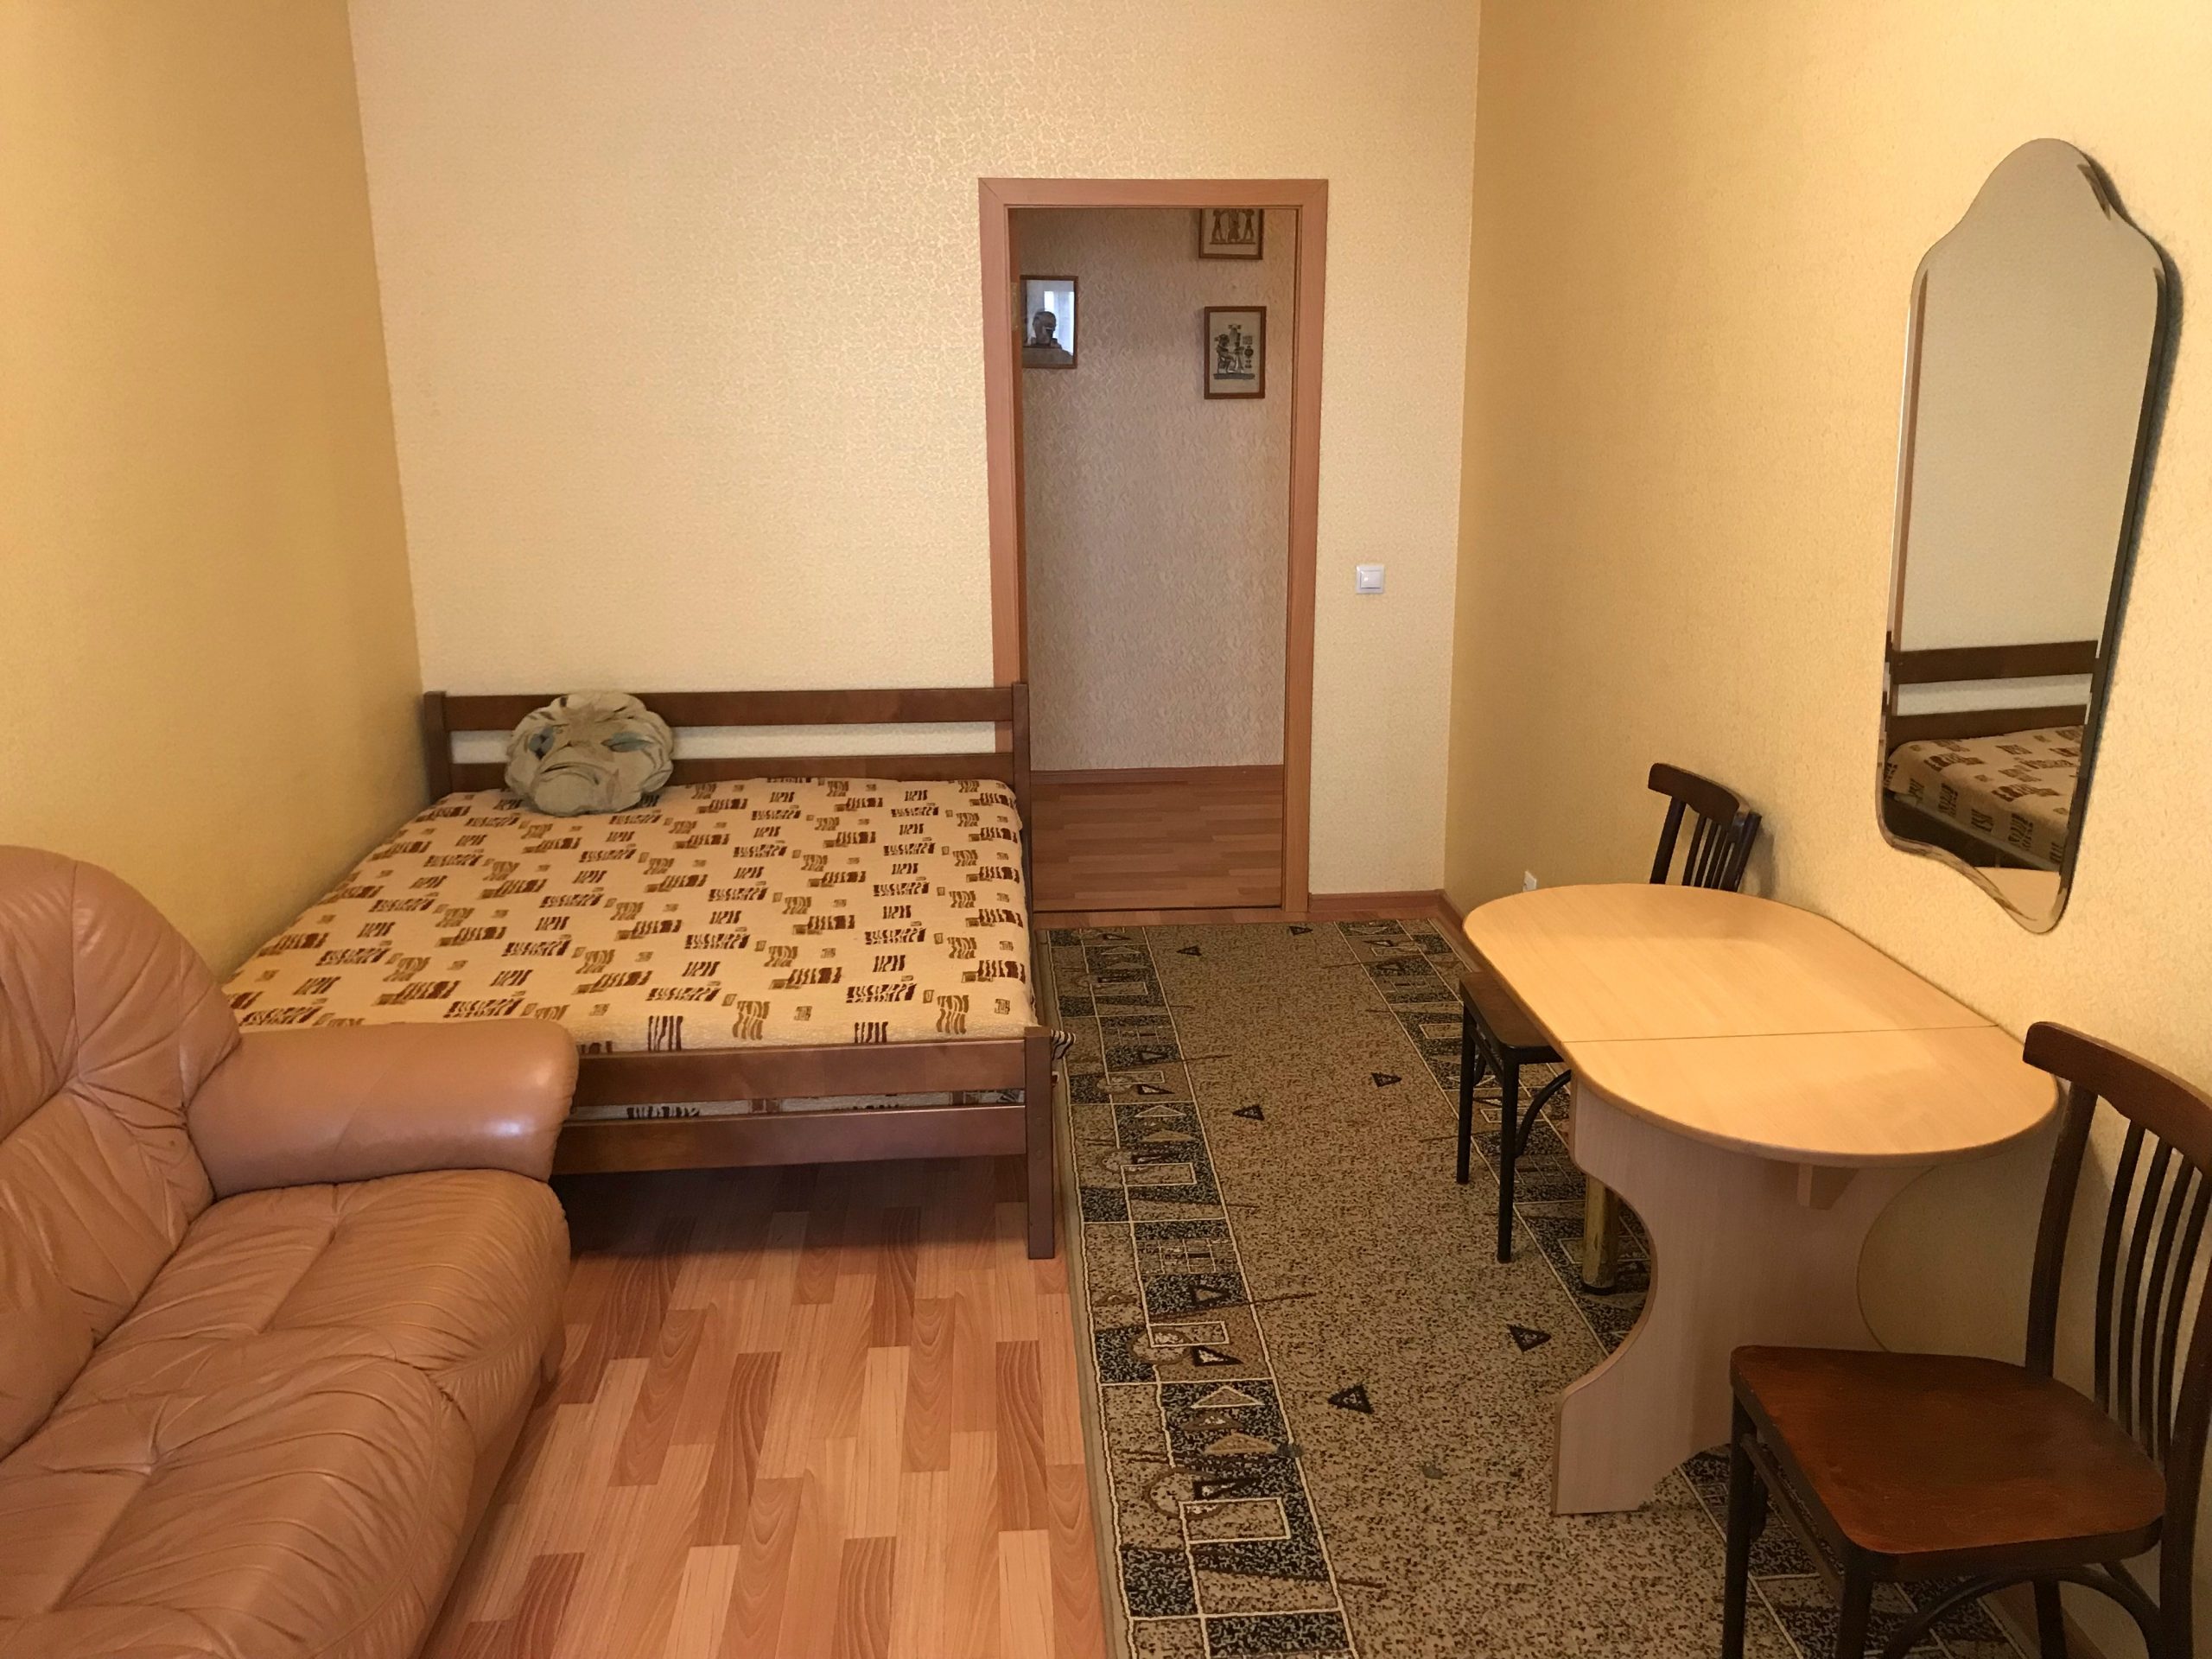 Однокомнатная квартира на ул. Чернышевского 17д (40кв.м)до 4 гостей